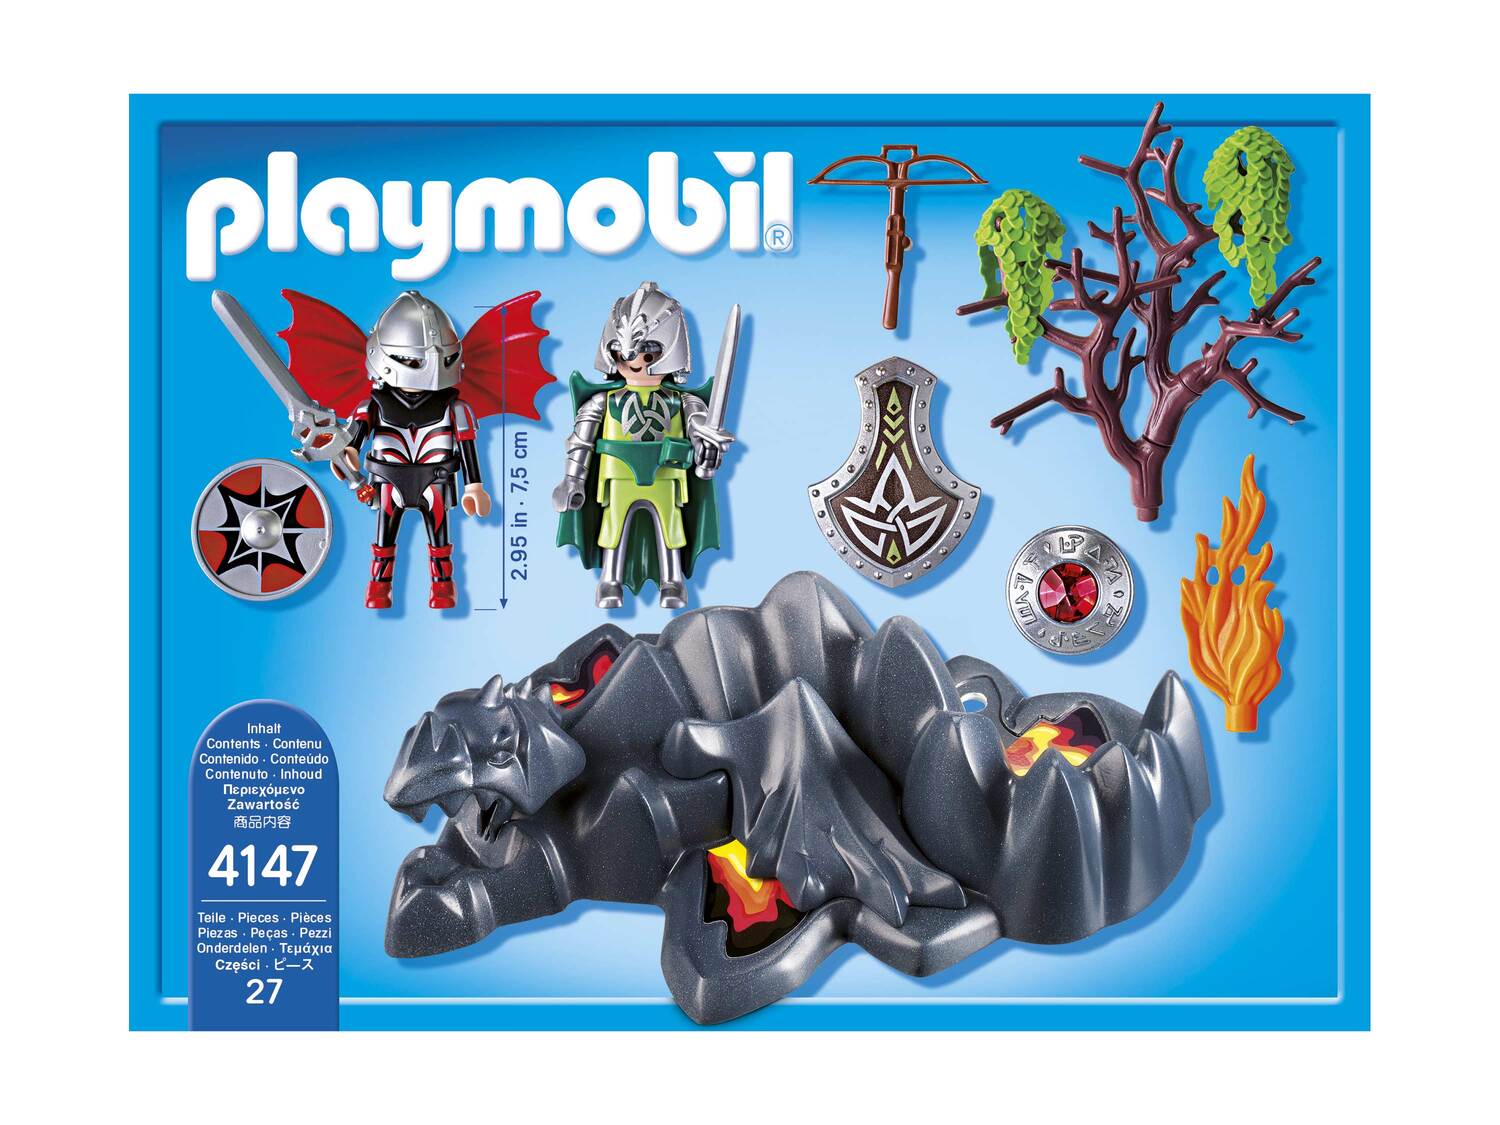 Zestaw klocków z figurkami Playmobil, cena 34,99 PLN  

Opis

- 4+